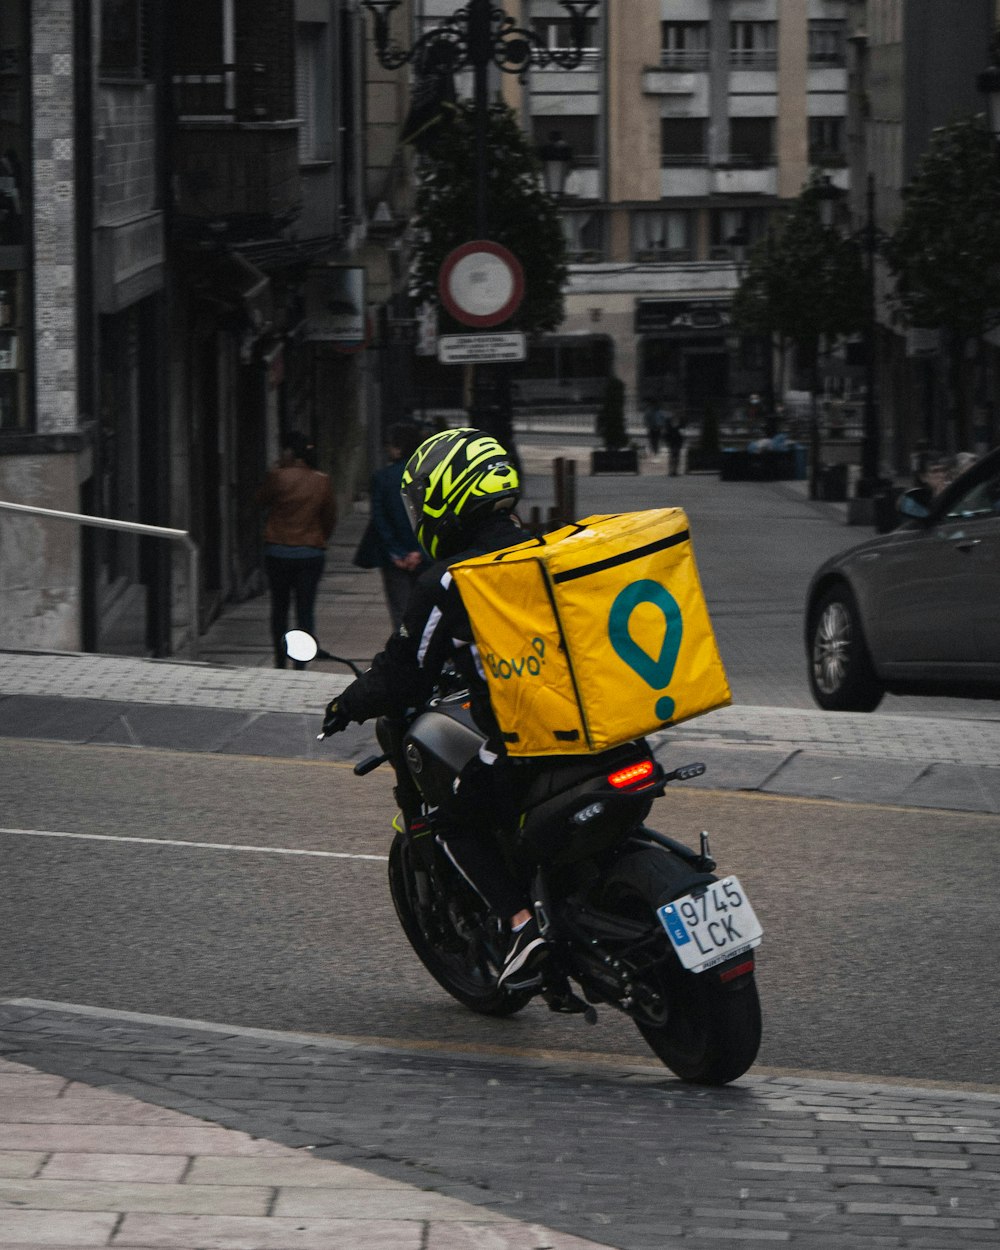 uomo in casco giallo che guida motocicletta nera sulla strada durante il giorno